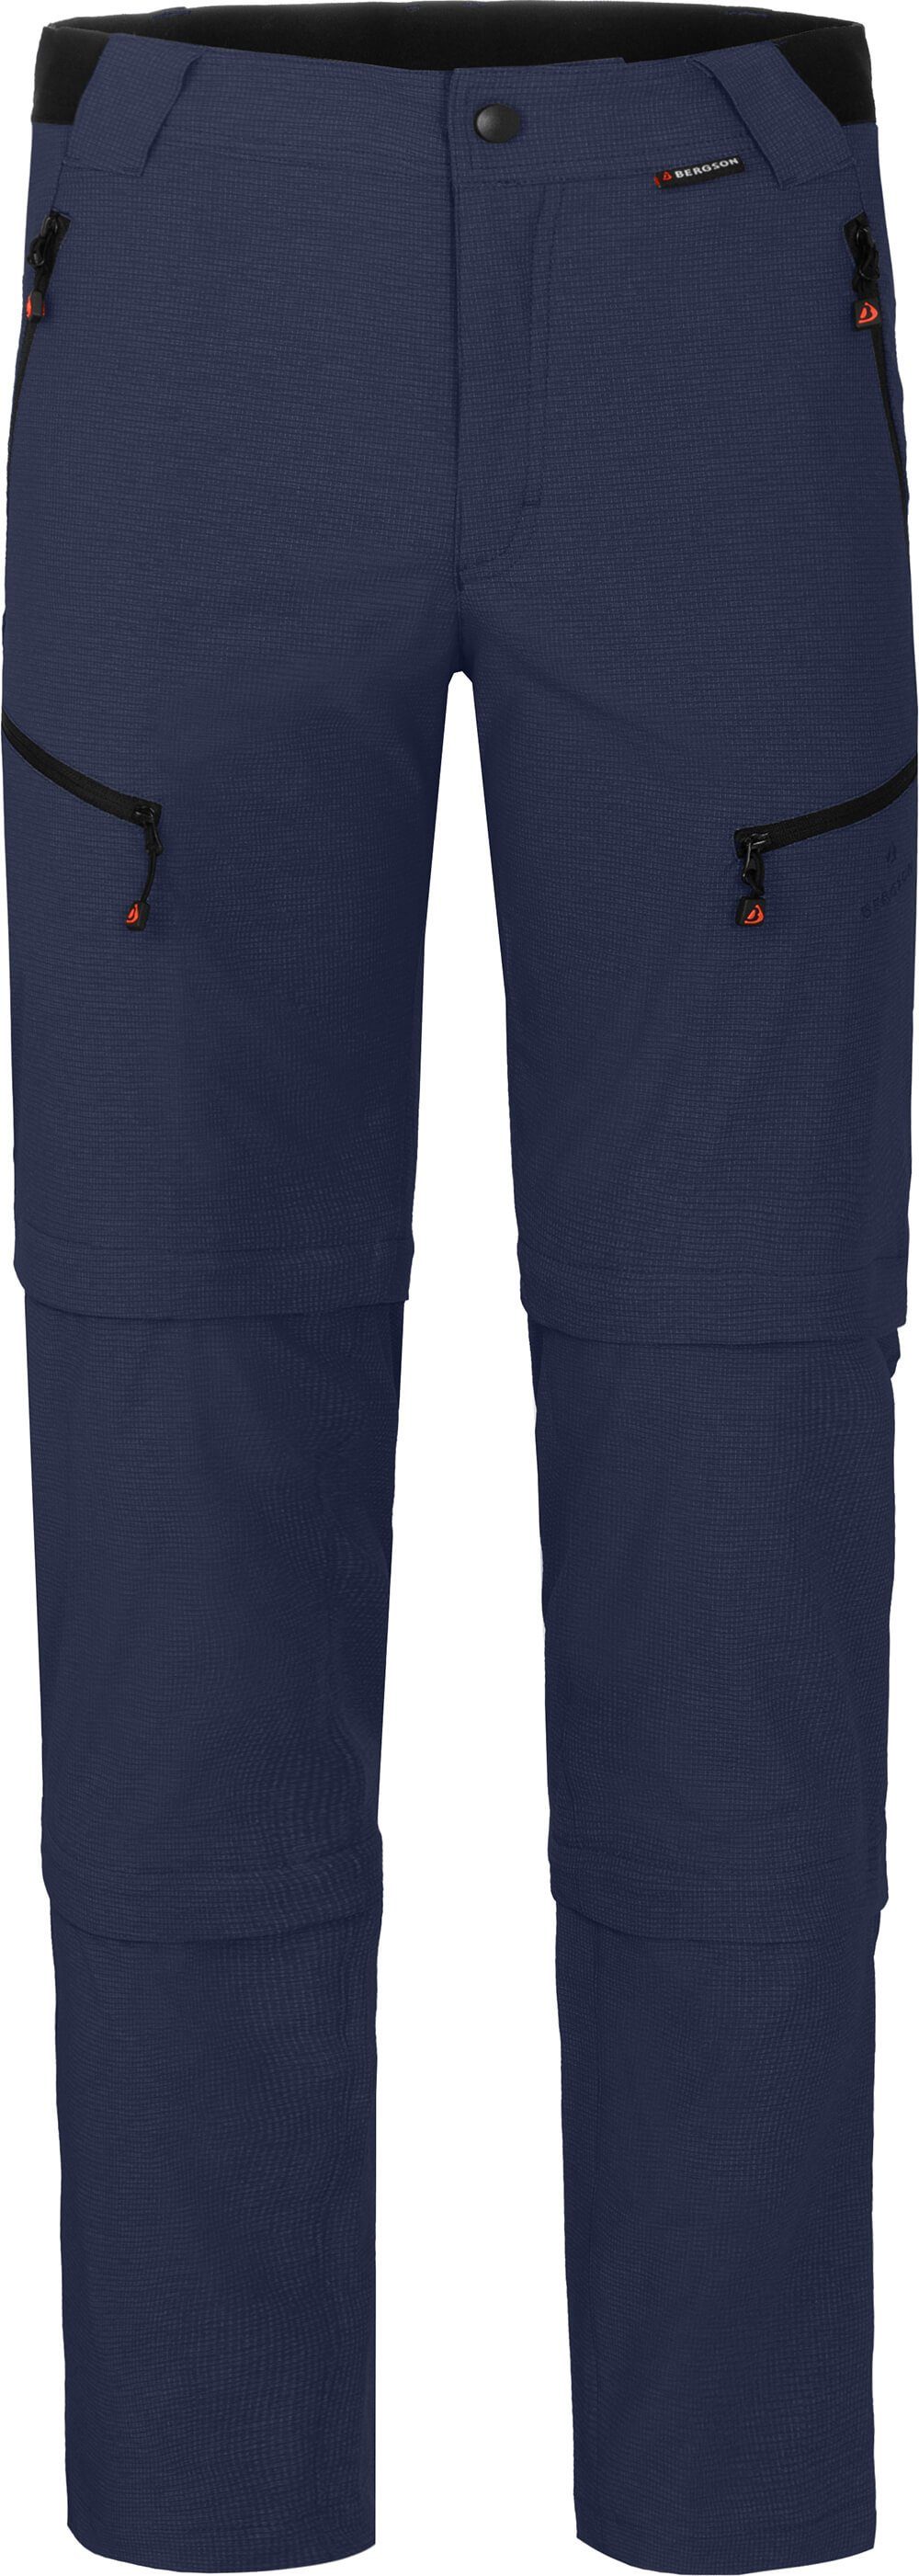 Doppel Zip-off-Hose Herren Bergson mit peacoat robust blau LEBIKO Wanderhose, Zipp-Off T-ZIPP Kurzgrößen, elastisch,